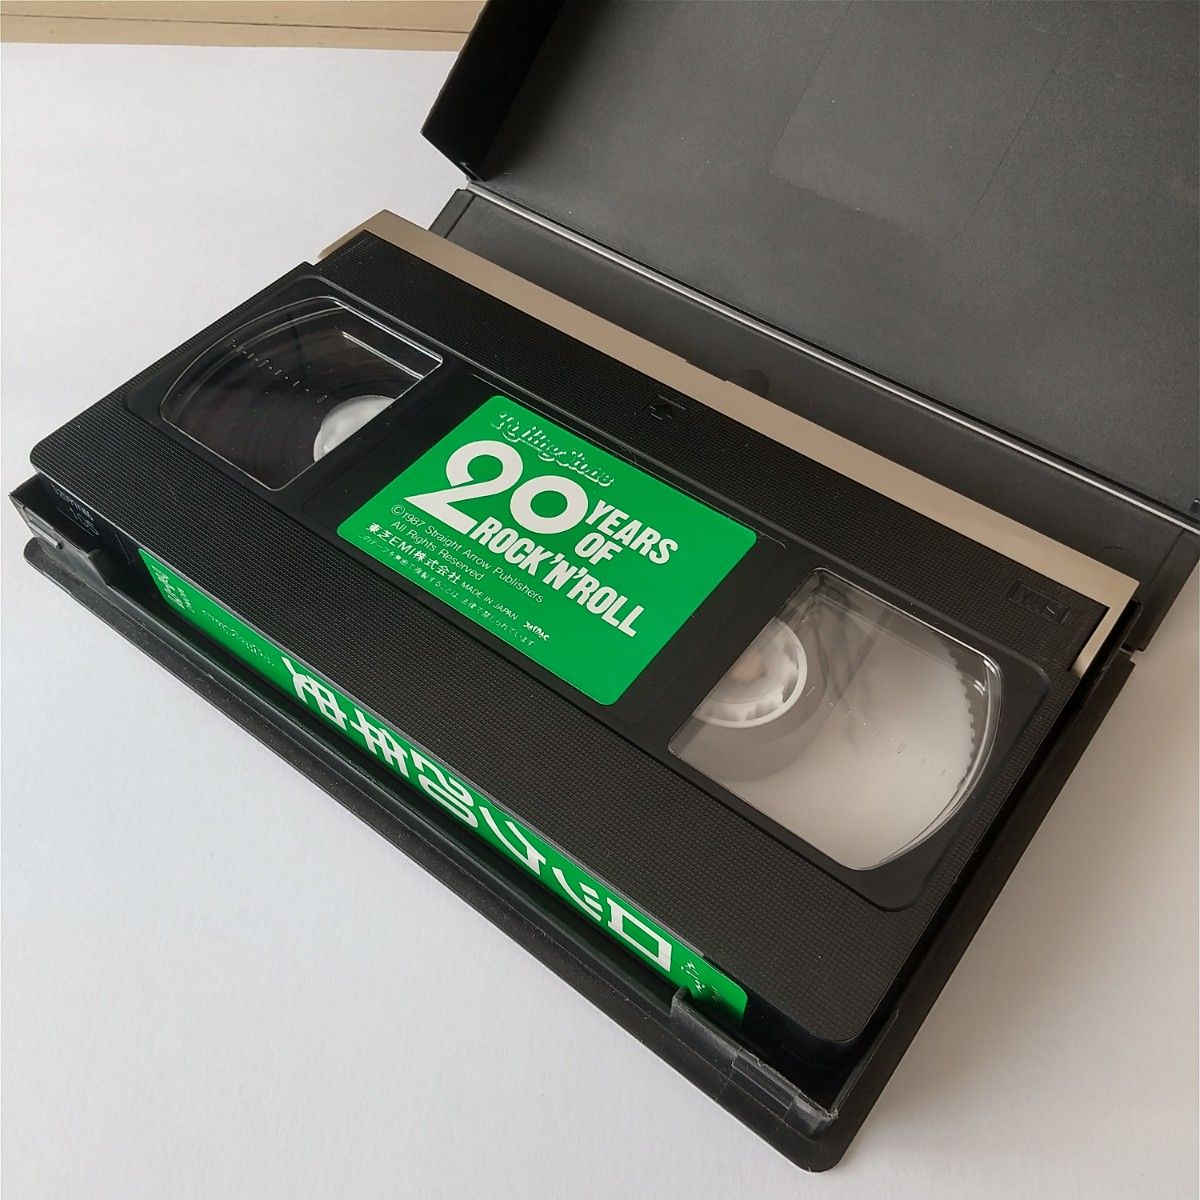 ロック20年史 ローリングストーン誌 創刊20周年記念ビテオ VHS